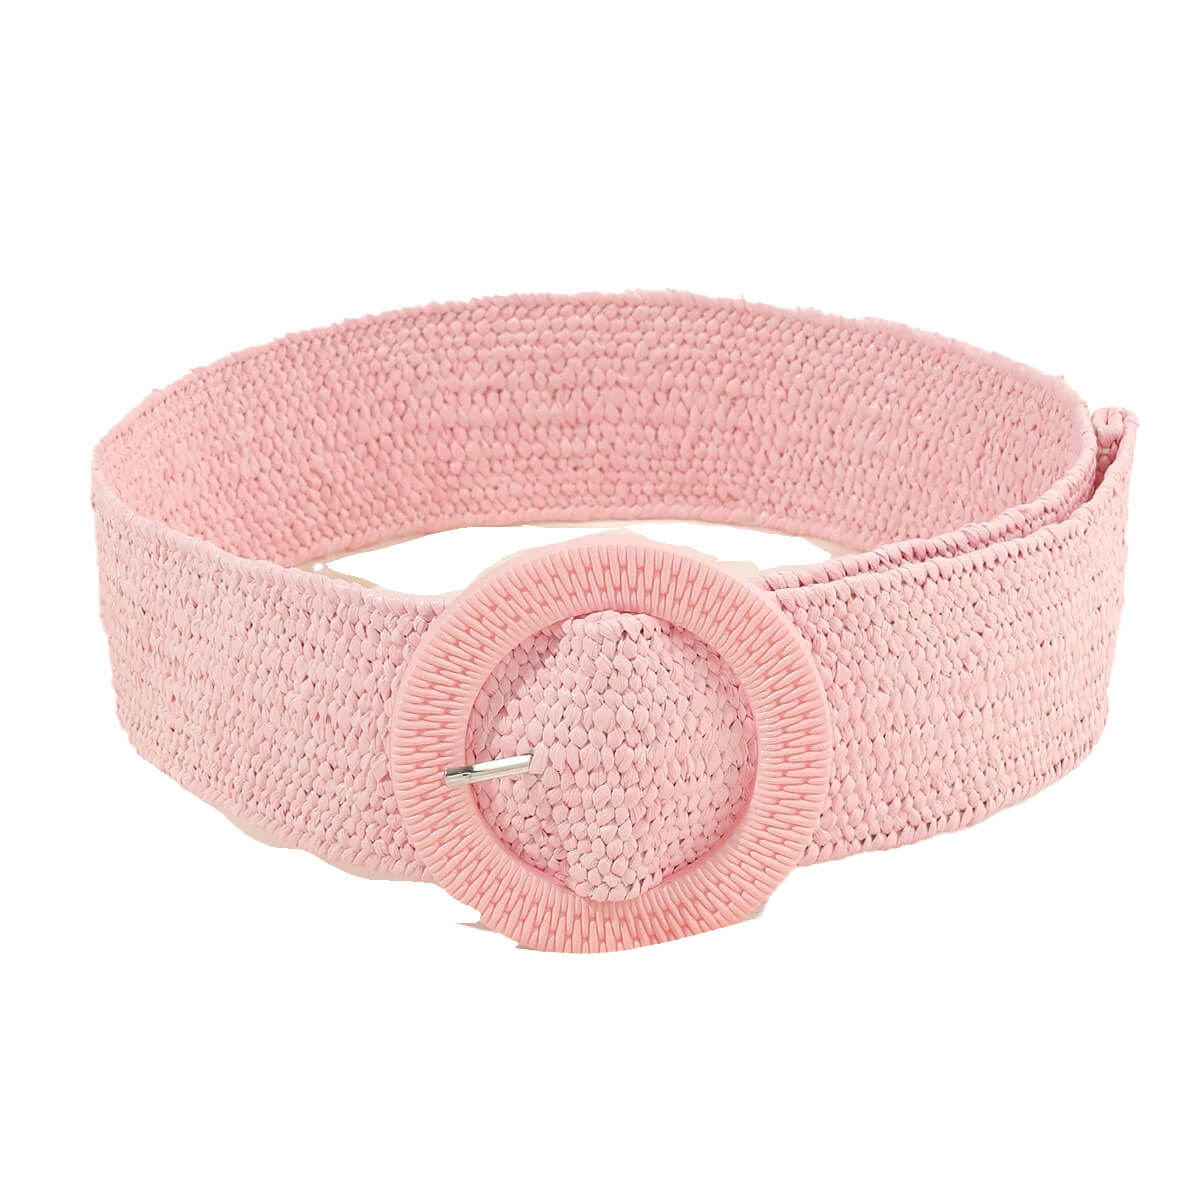 Raffia-Wrapped Stretch Belt pinkfront | MILK MONEY milkmoney.co | women's accessories. cute accessories. trendy accessories. cute accessories for girls. ladies accessories. women's fashion accessories.